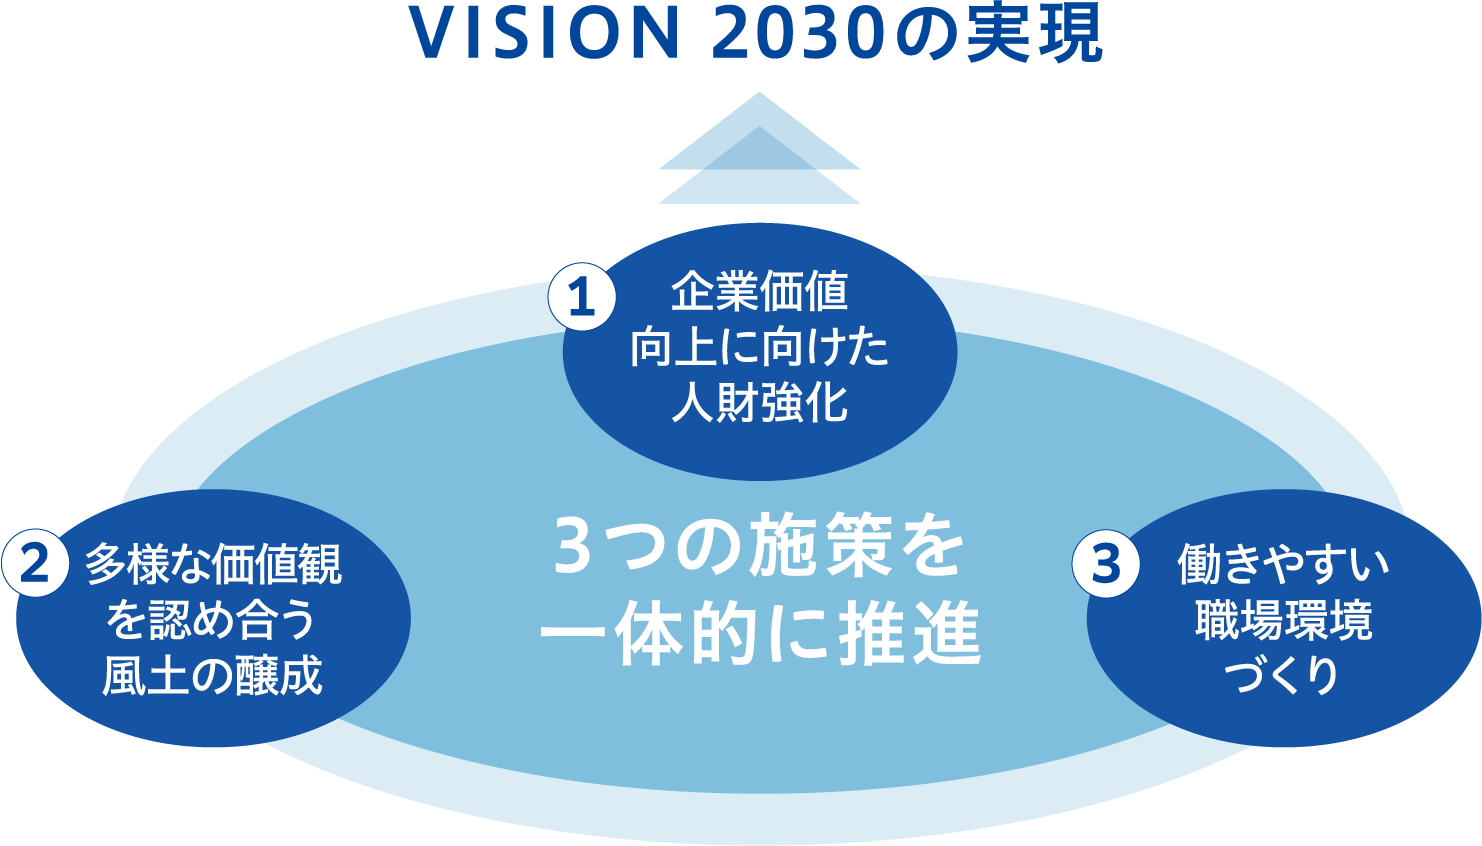 「VISION 2030」の実現に向け、「①企業価値向上に向けた人財強化」、「②多様な価値観を認め合う風土の醸成」、「③働きやすい職場環境づくり」といった3つの施策を一体的に推進します。